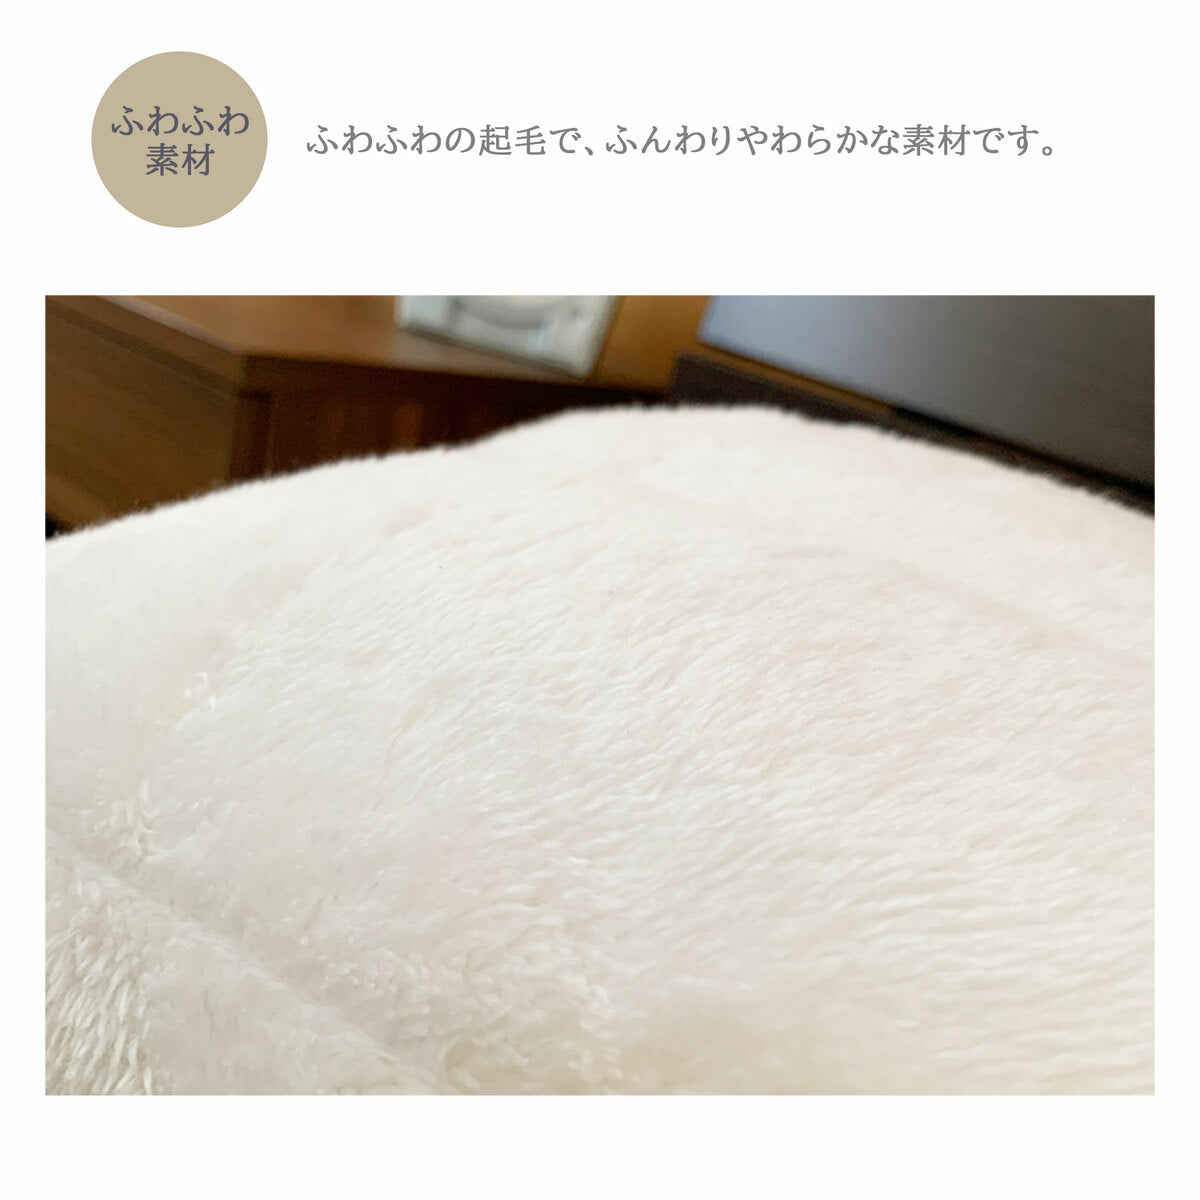 枕パッド 【2枚セット・白】 冬用 43×63cm ホワイト 起毛素材 マイクロファイバー あたたかな肌触り